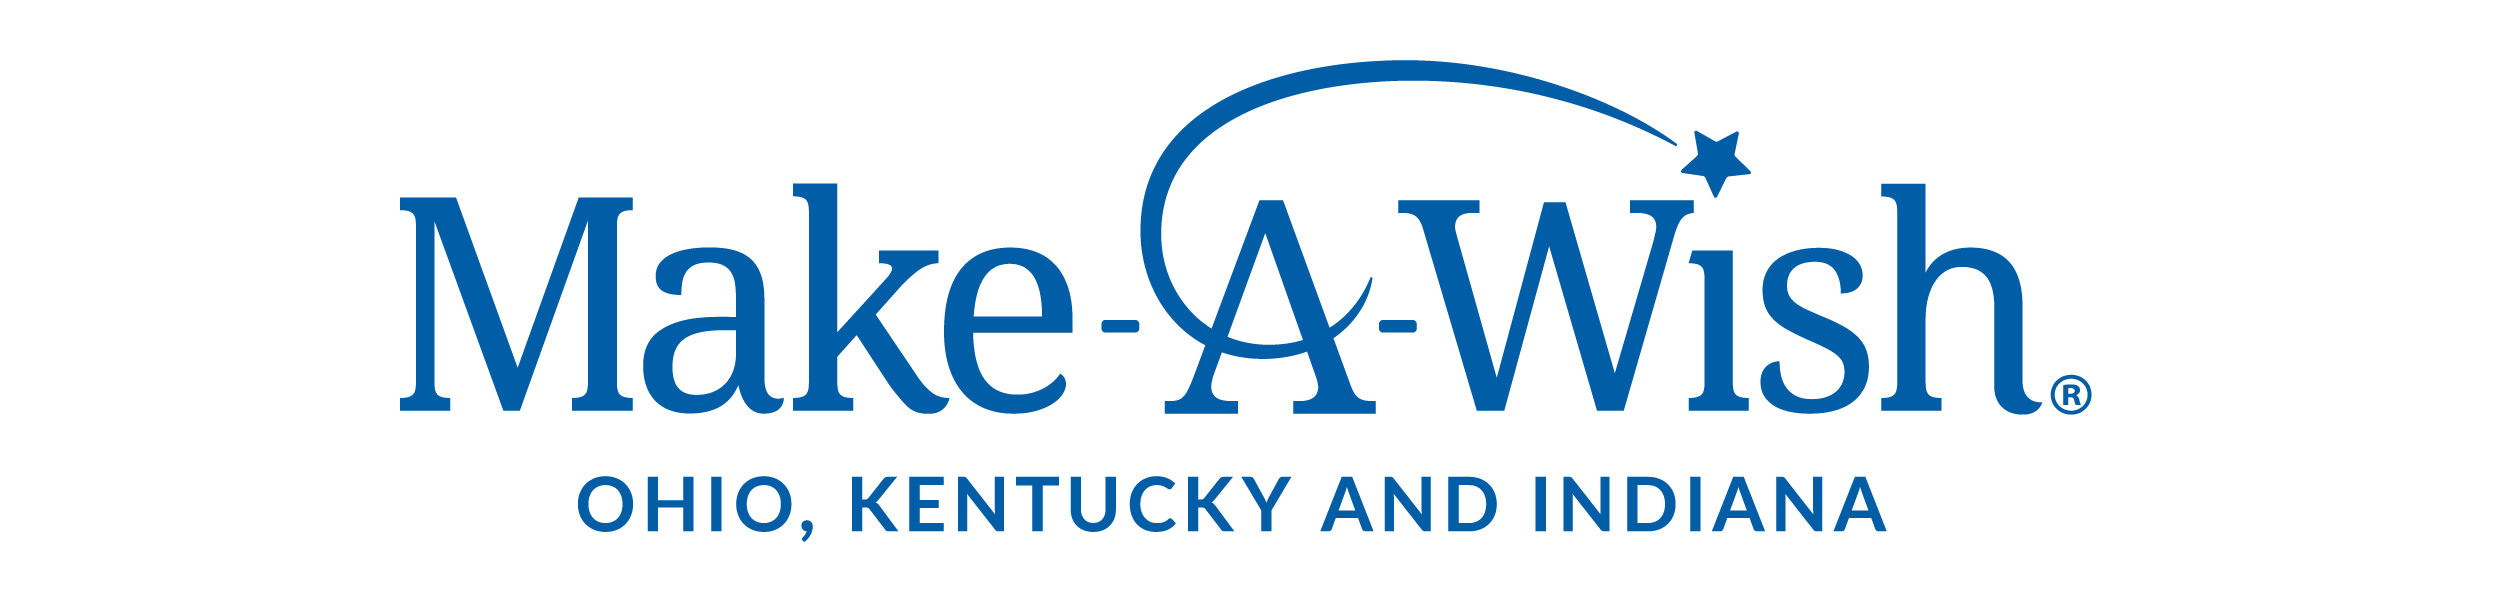 Make-A-Wish Ohio, Kentucky & Indiana Company Logo